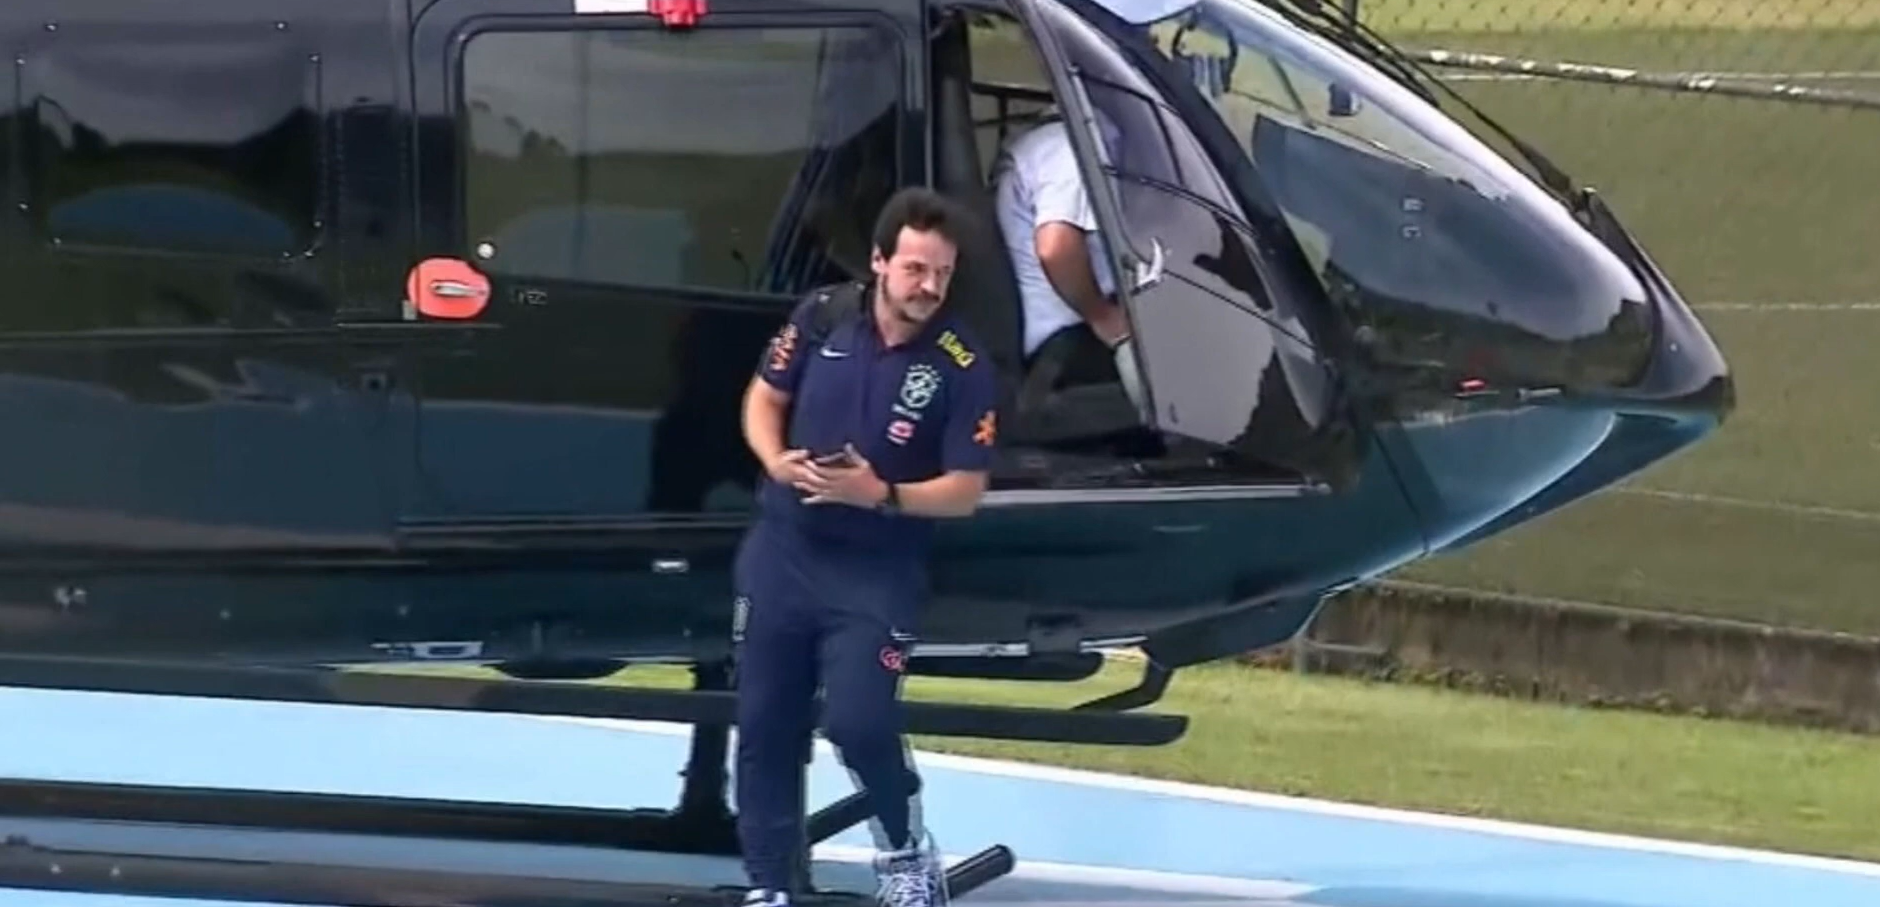 Selecționerul Braziliei a venit la antrenament cu elicopterul lui Neymar, iar presa a răbufnit: ”El l-a pus la națională”